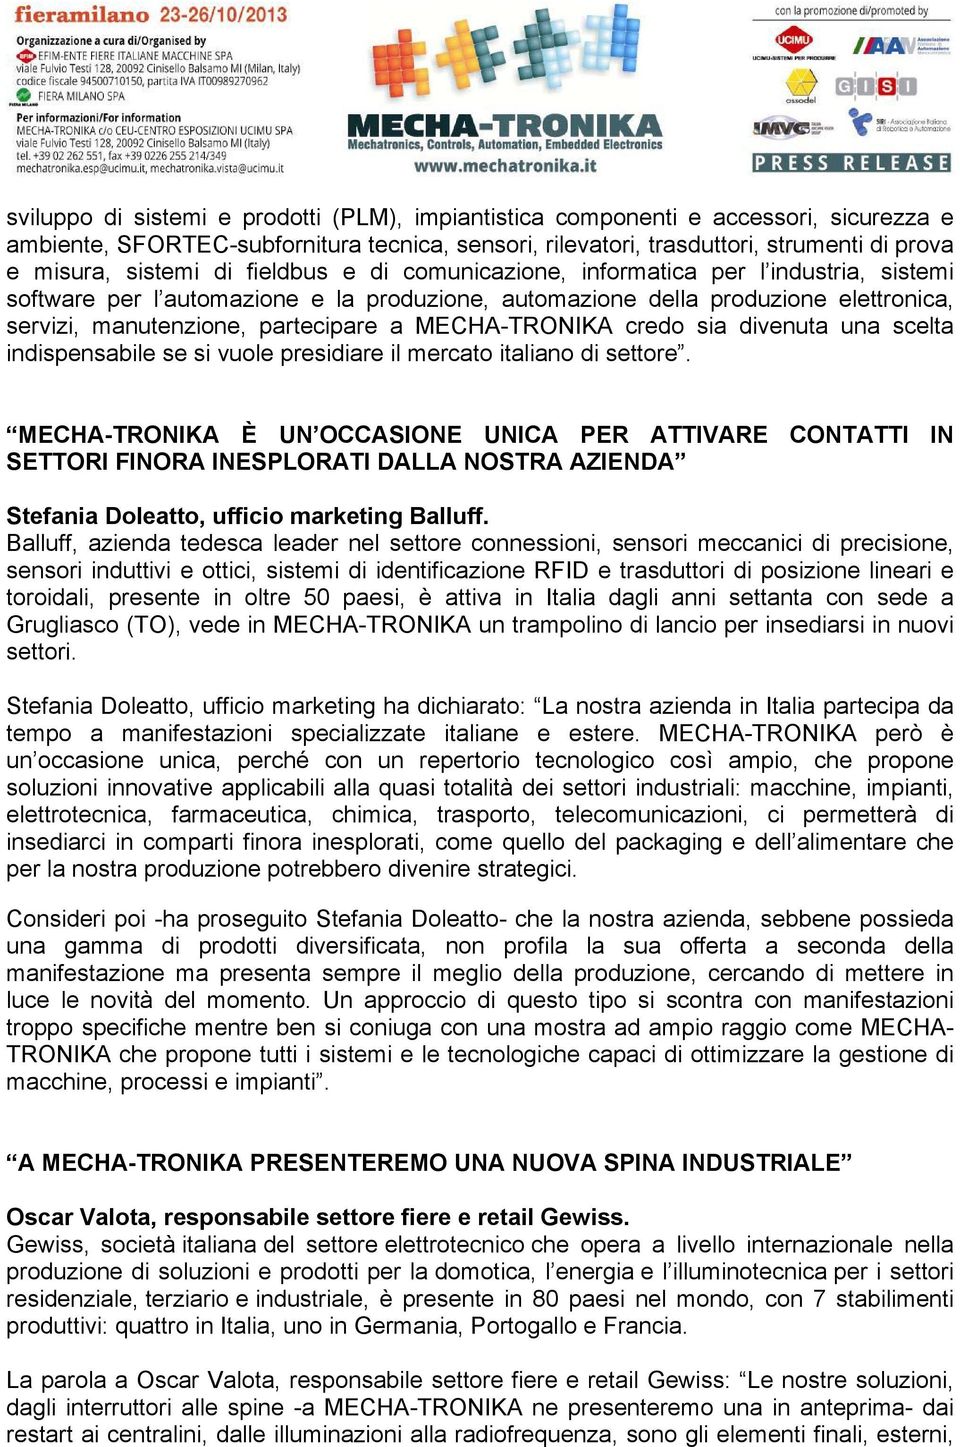 MECHA-TRONIKA credo sia divenuta una scelta indispensabile se si vuole presidiare il mercato italiano di settore.